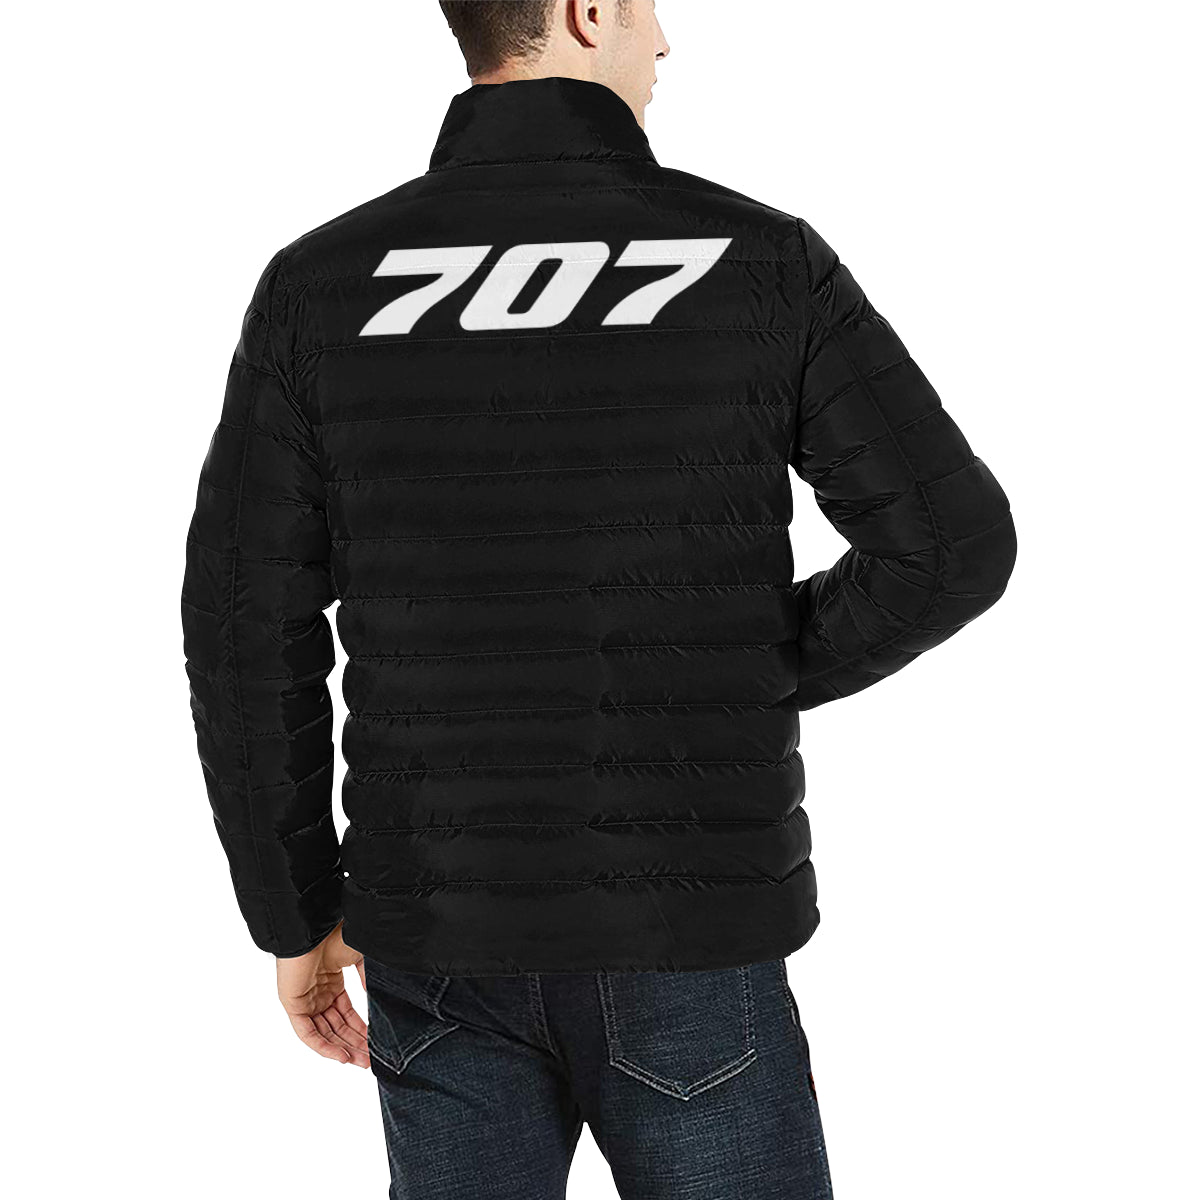 BOEING 707 Men's Stand Collar Padded Jacket e-joyer